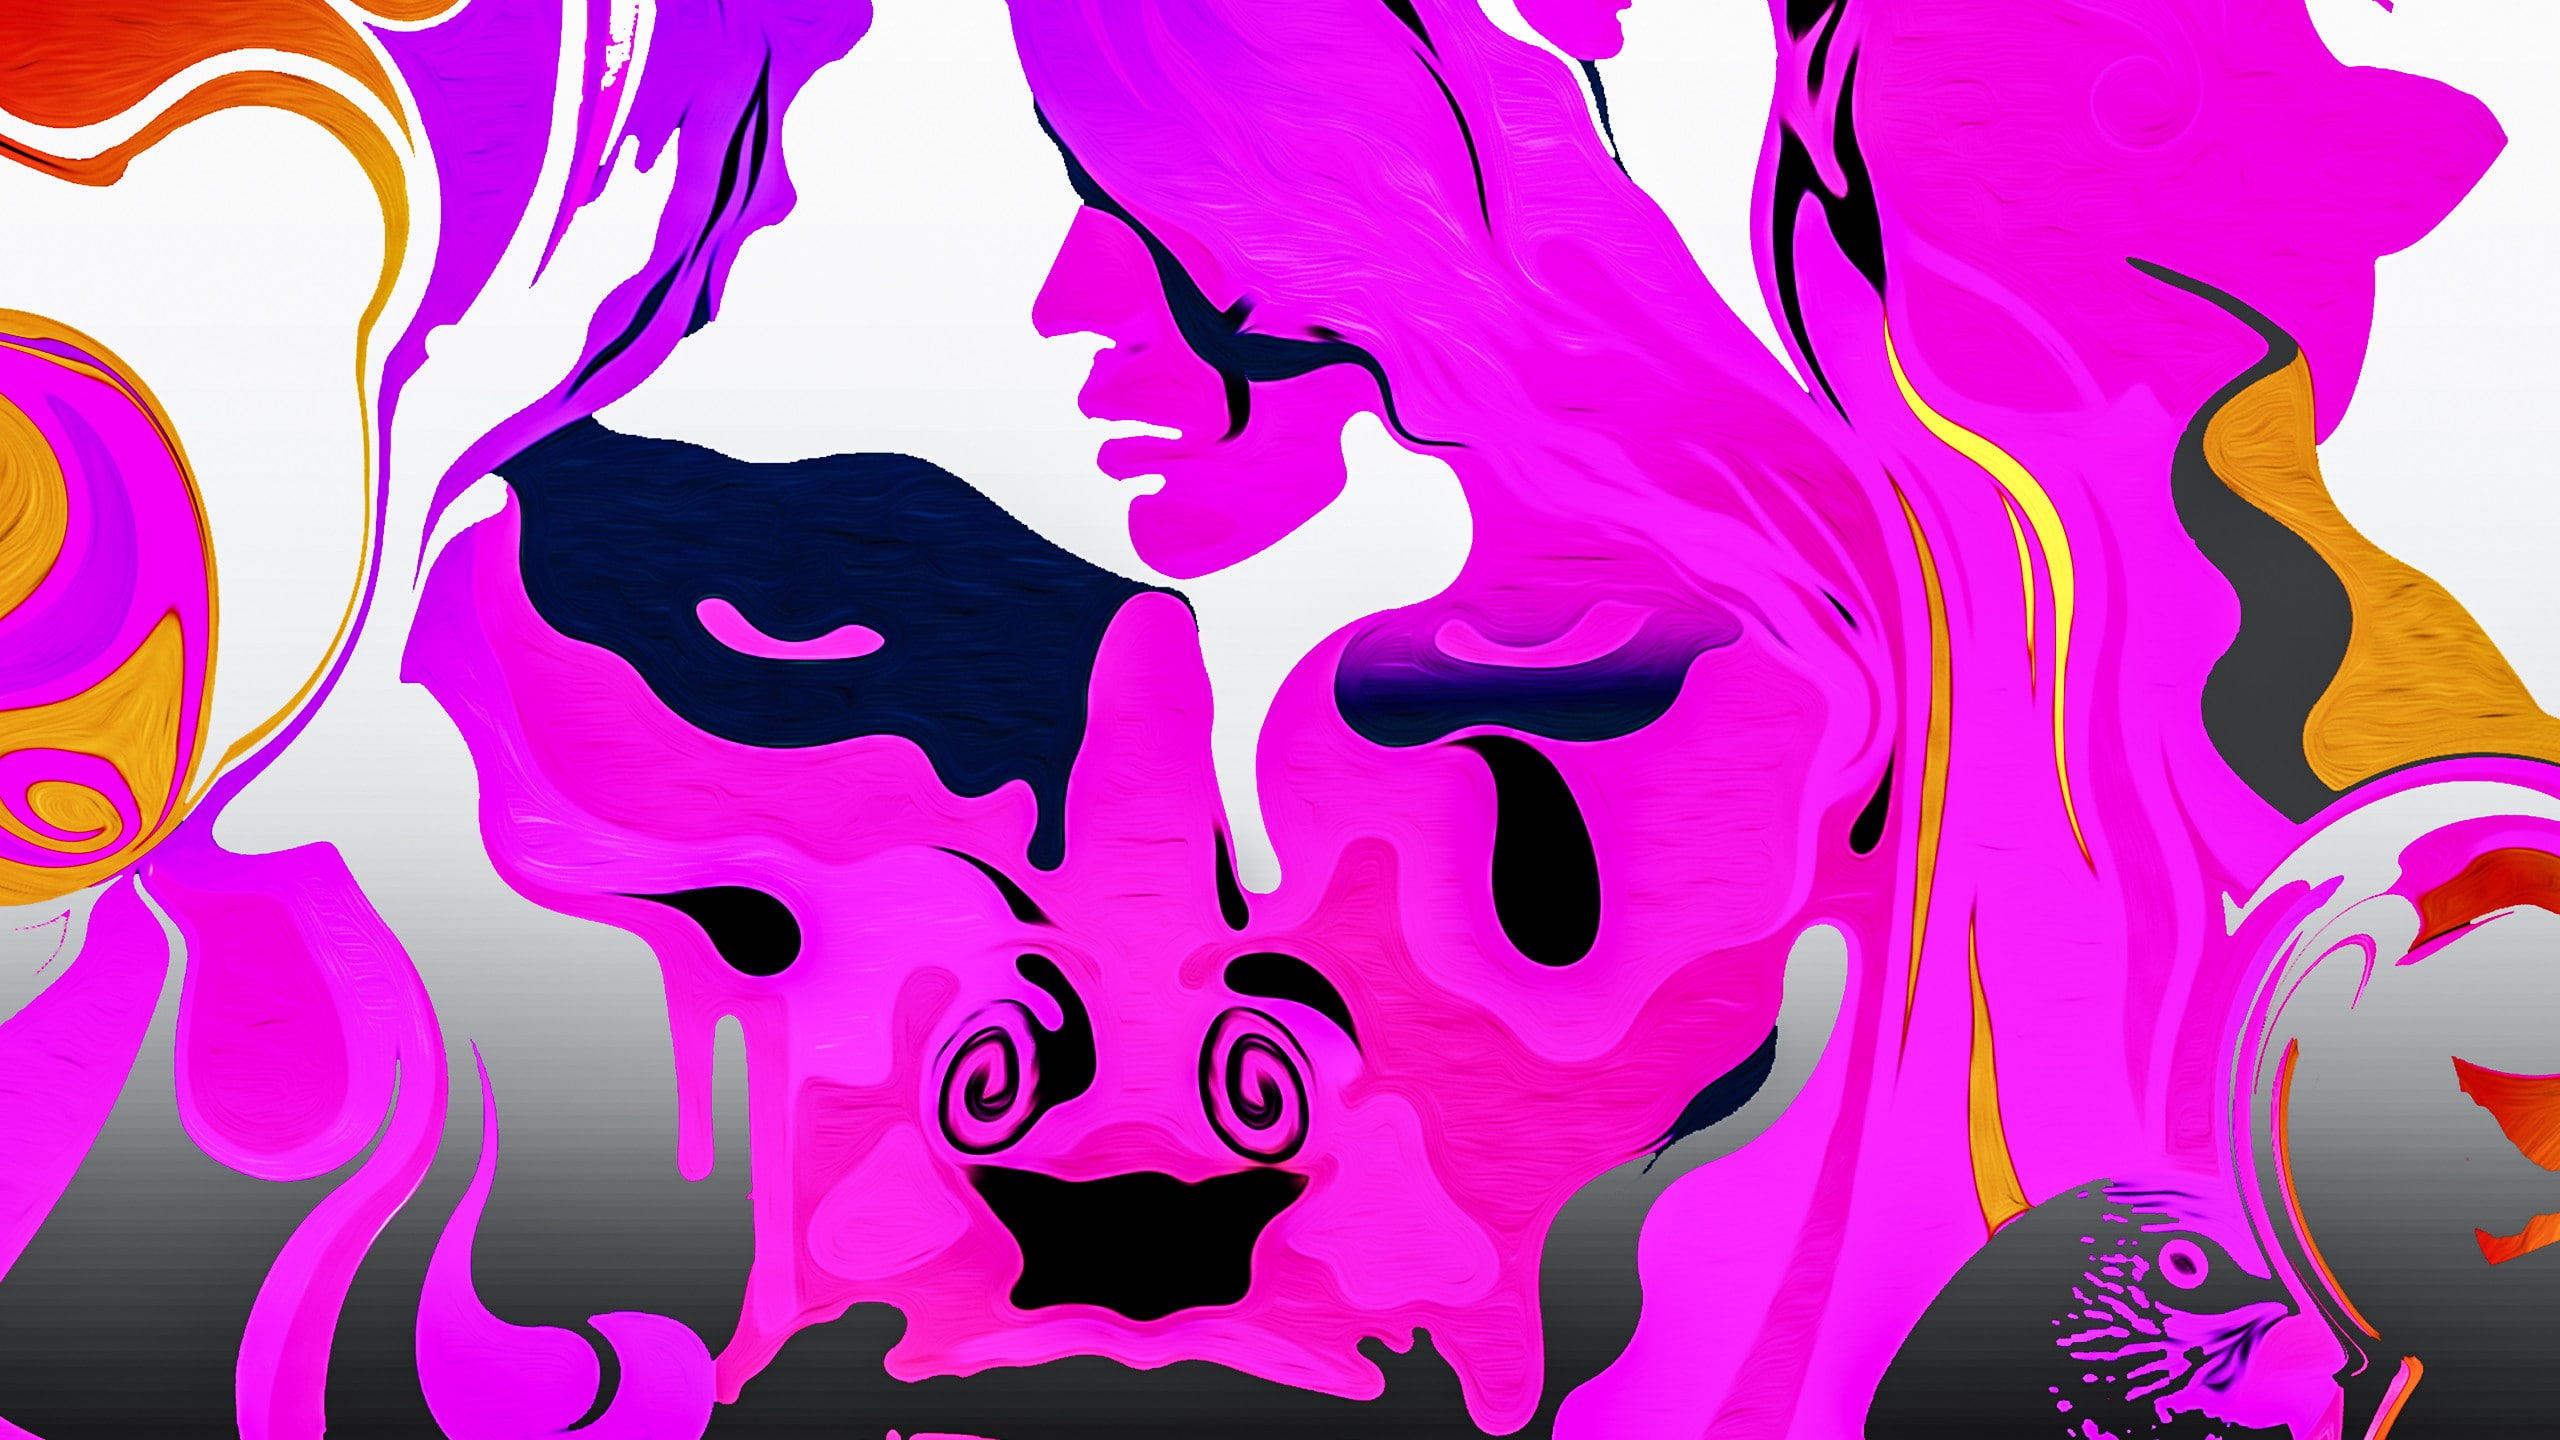 surreal, LSD, drugs, artwork, pink, face, psychedelic